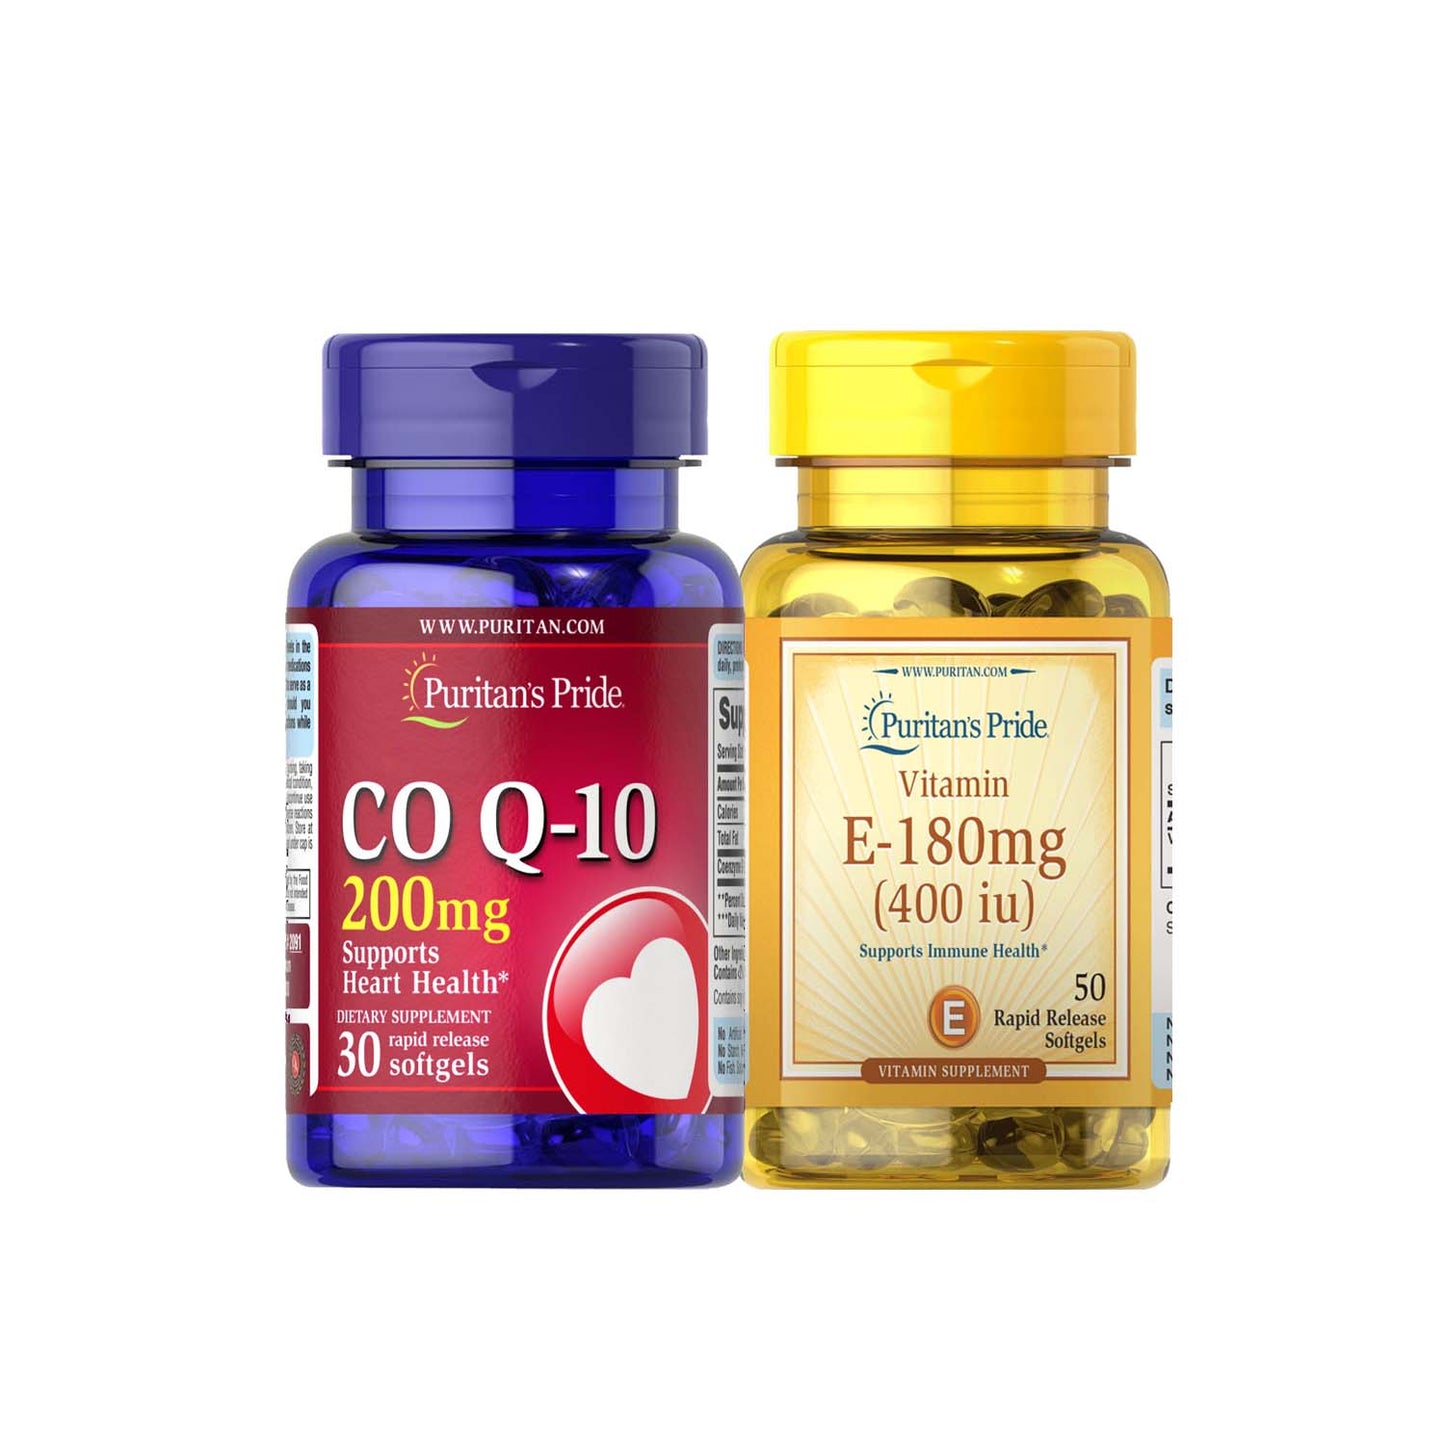 Co Q-10 200 mg 30 softgels + Vitamin E Synthetic 400 IU 50 Softgels Puritan's Pride PCOS